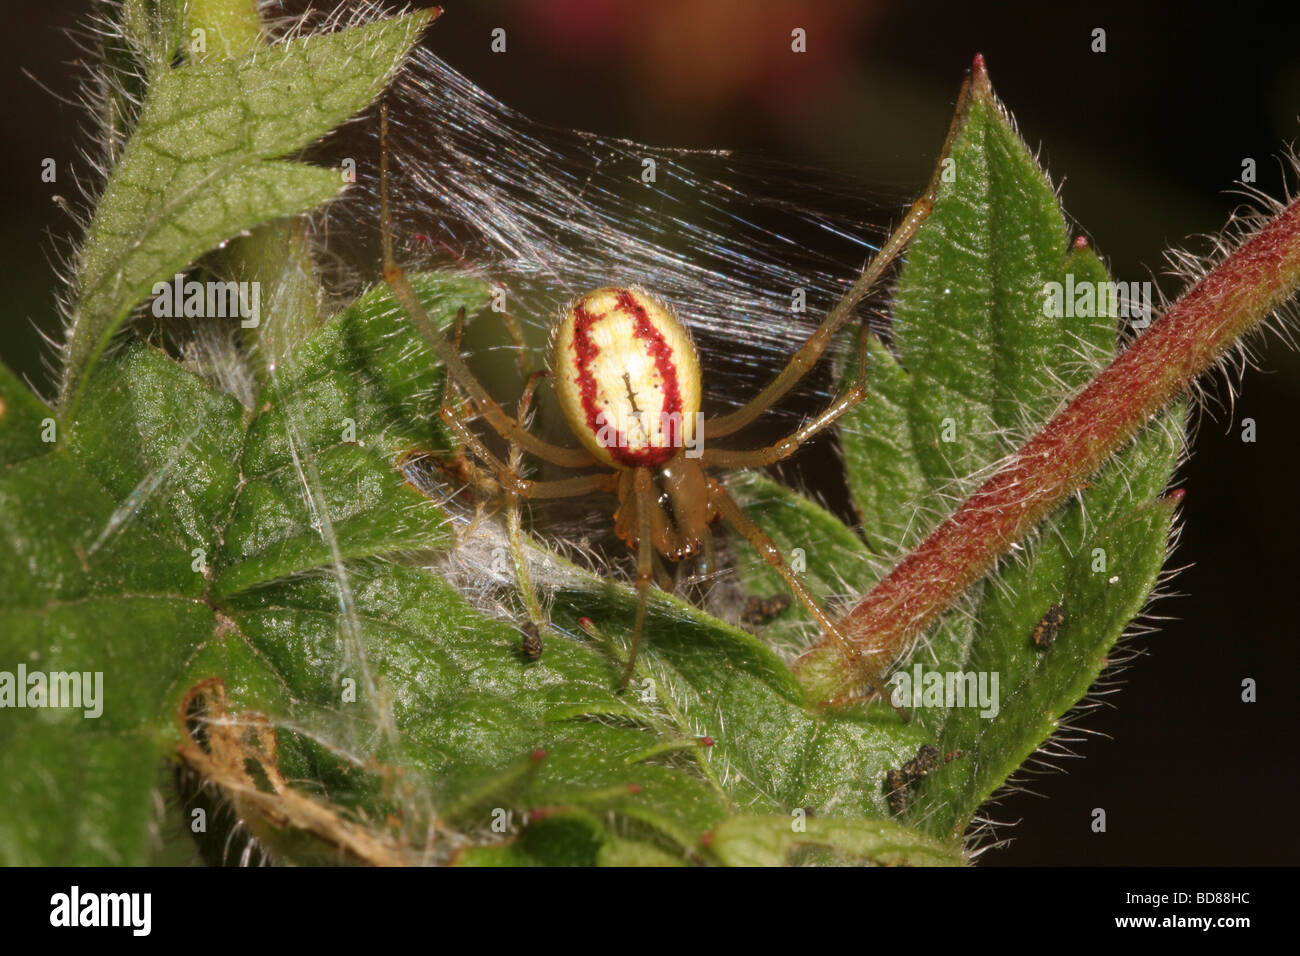 Rote und weiße Spinne Enoplognatha Ovata Theridiidae Weibchen in einem  städtischen Garten UK Stockfotografie - Alamy